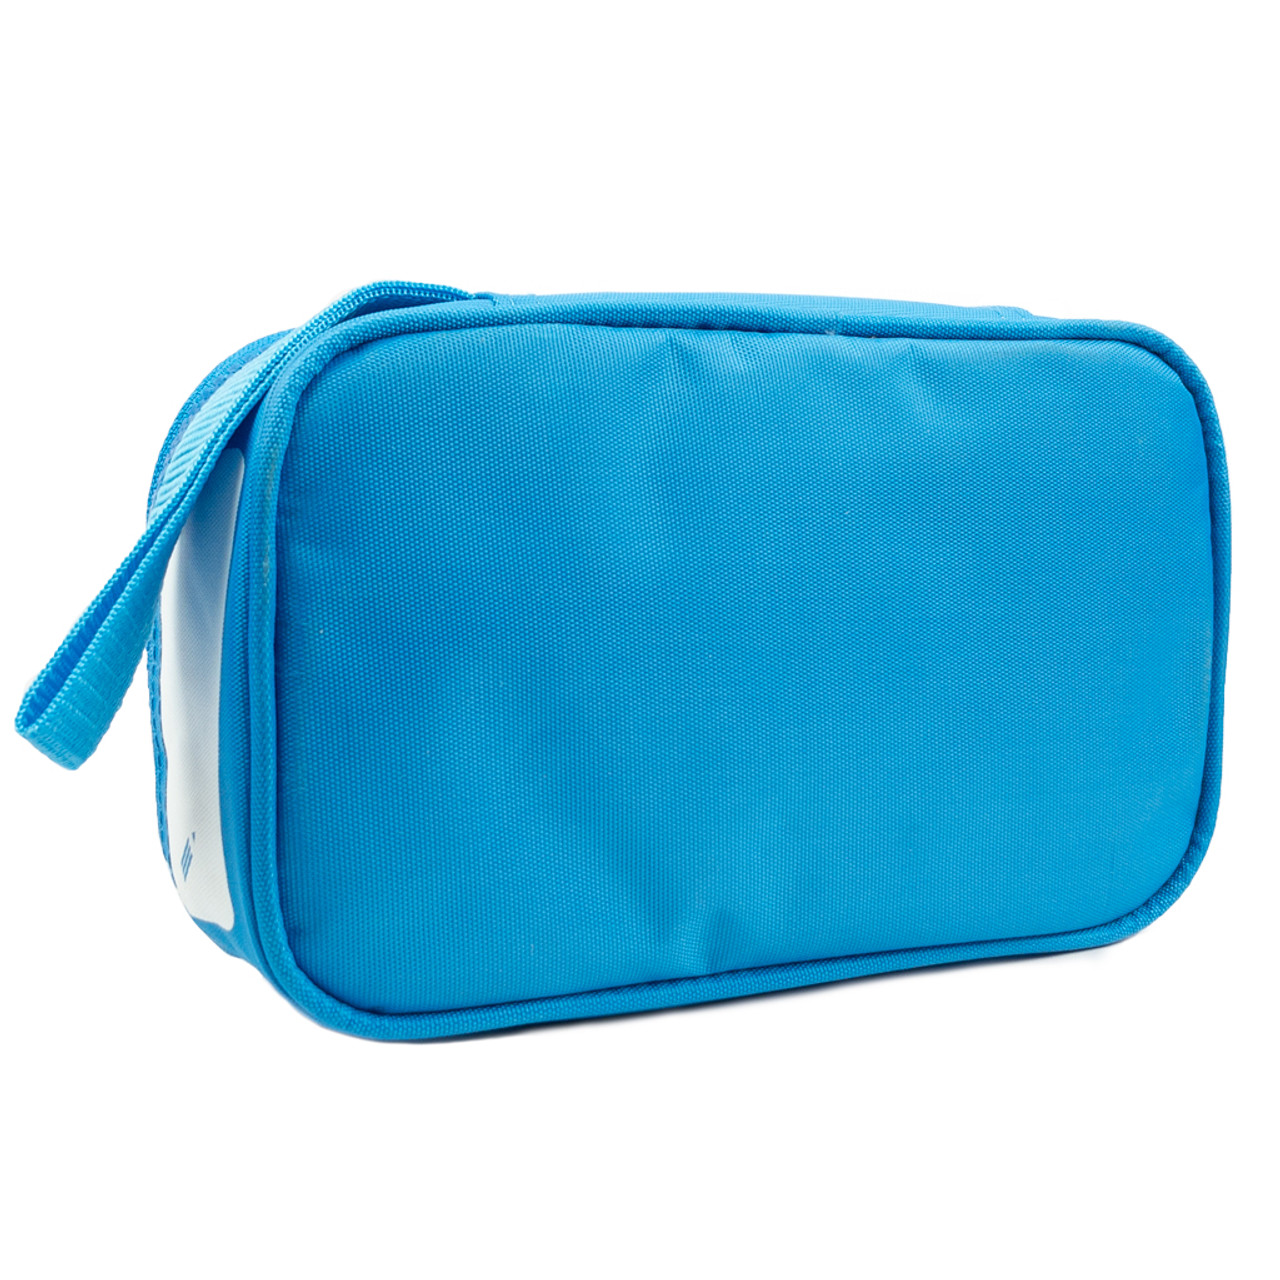 Blue Travel Bag for Medicines - Selles Medical